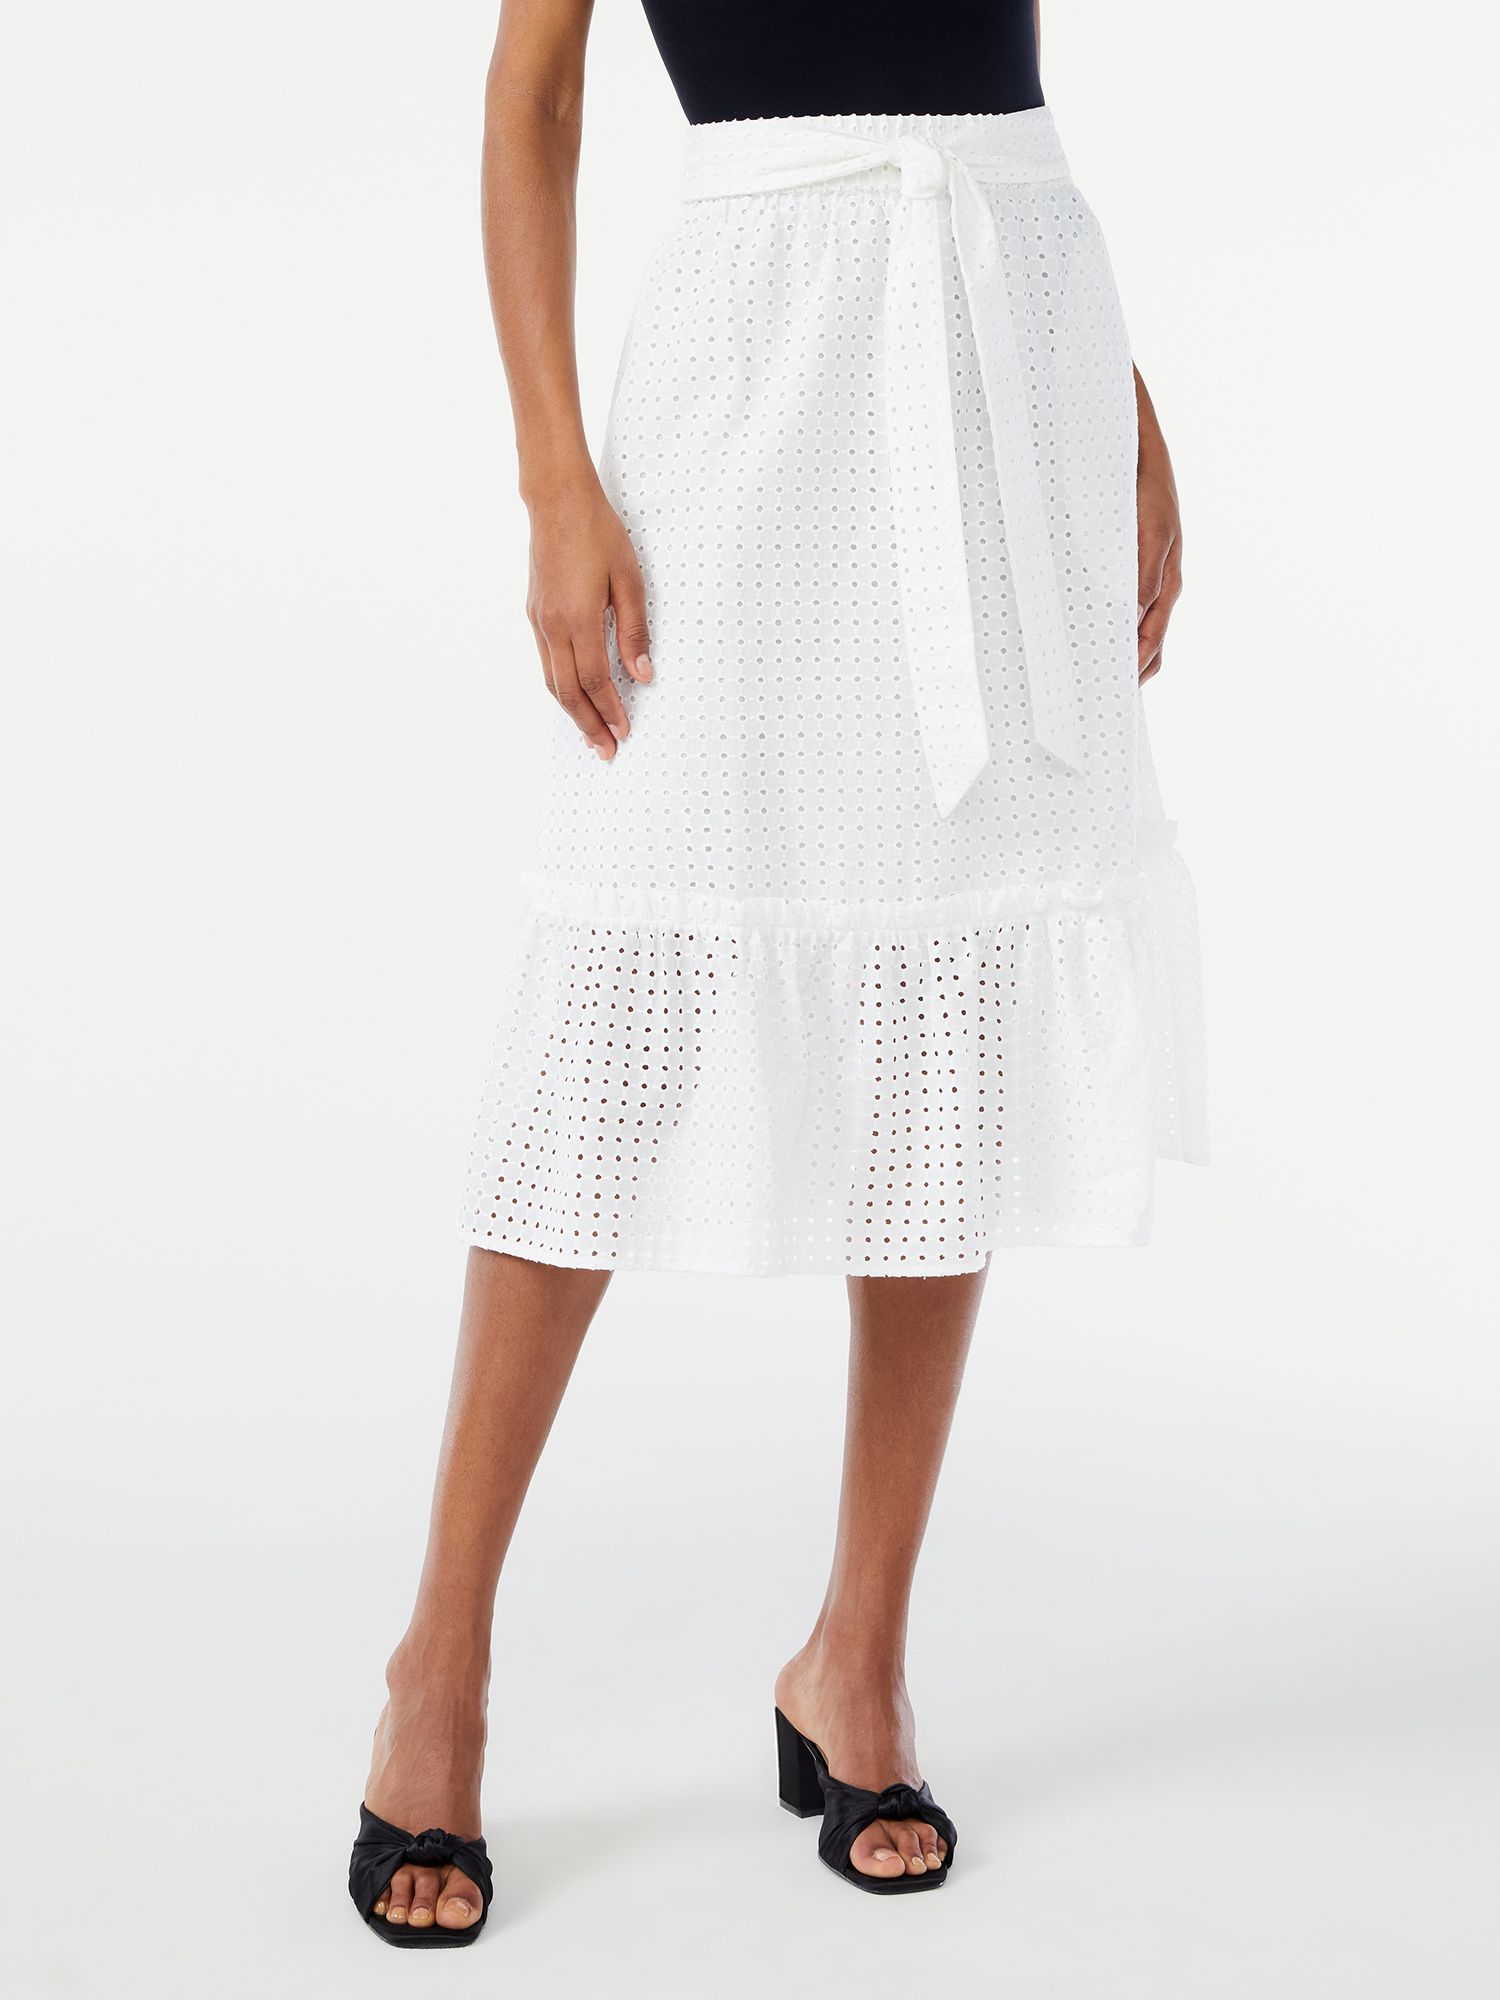 Scoop Women's Bow Tie Tier Midi Skirt - Walmart.com | Walmart (US)